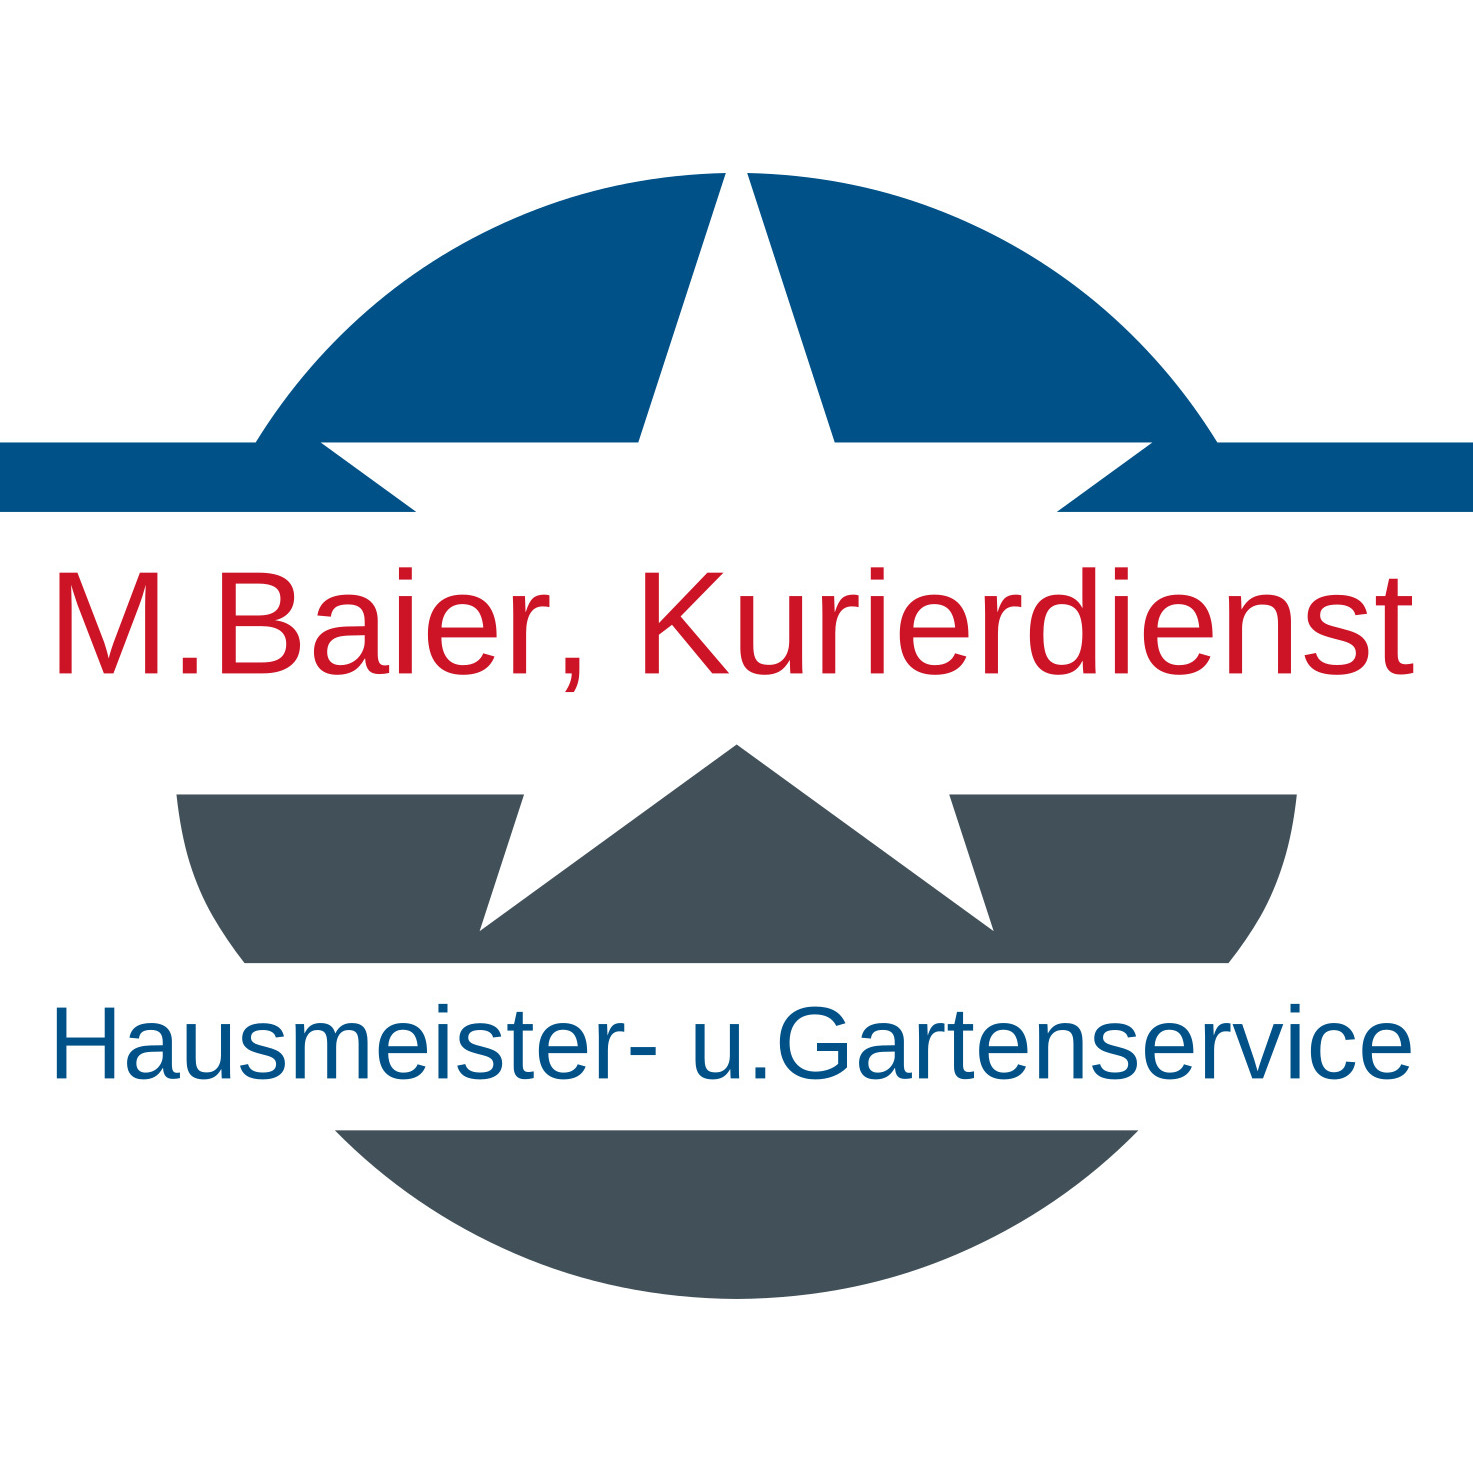 M. Baier, Kurierdienst, Hausmeister-und Gartenservice  